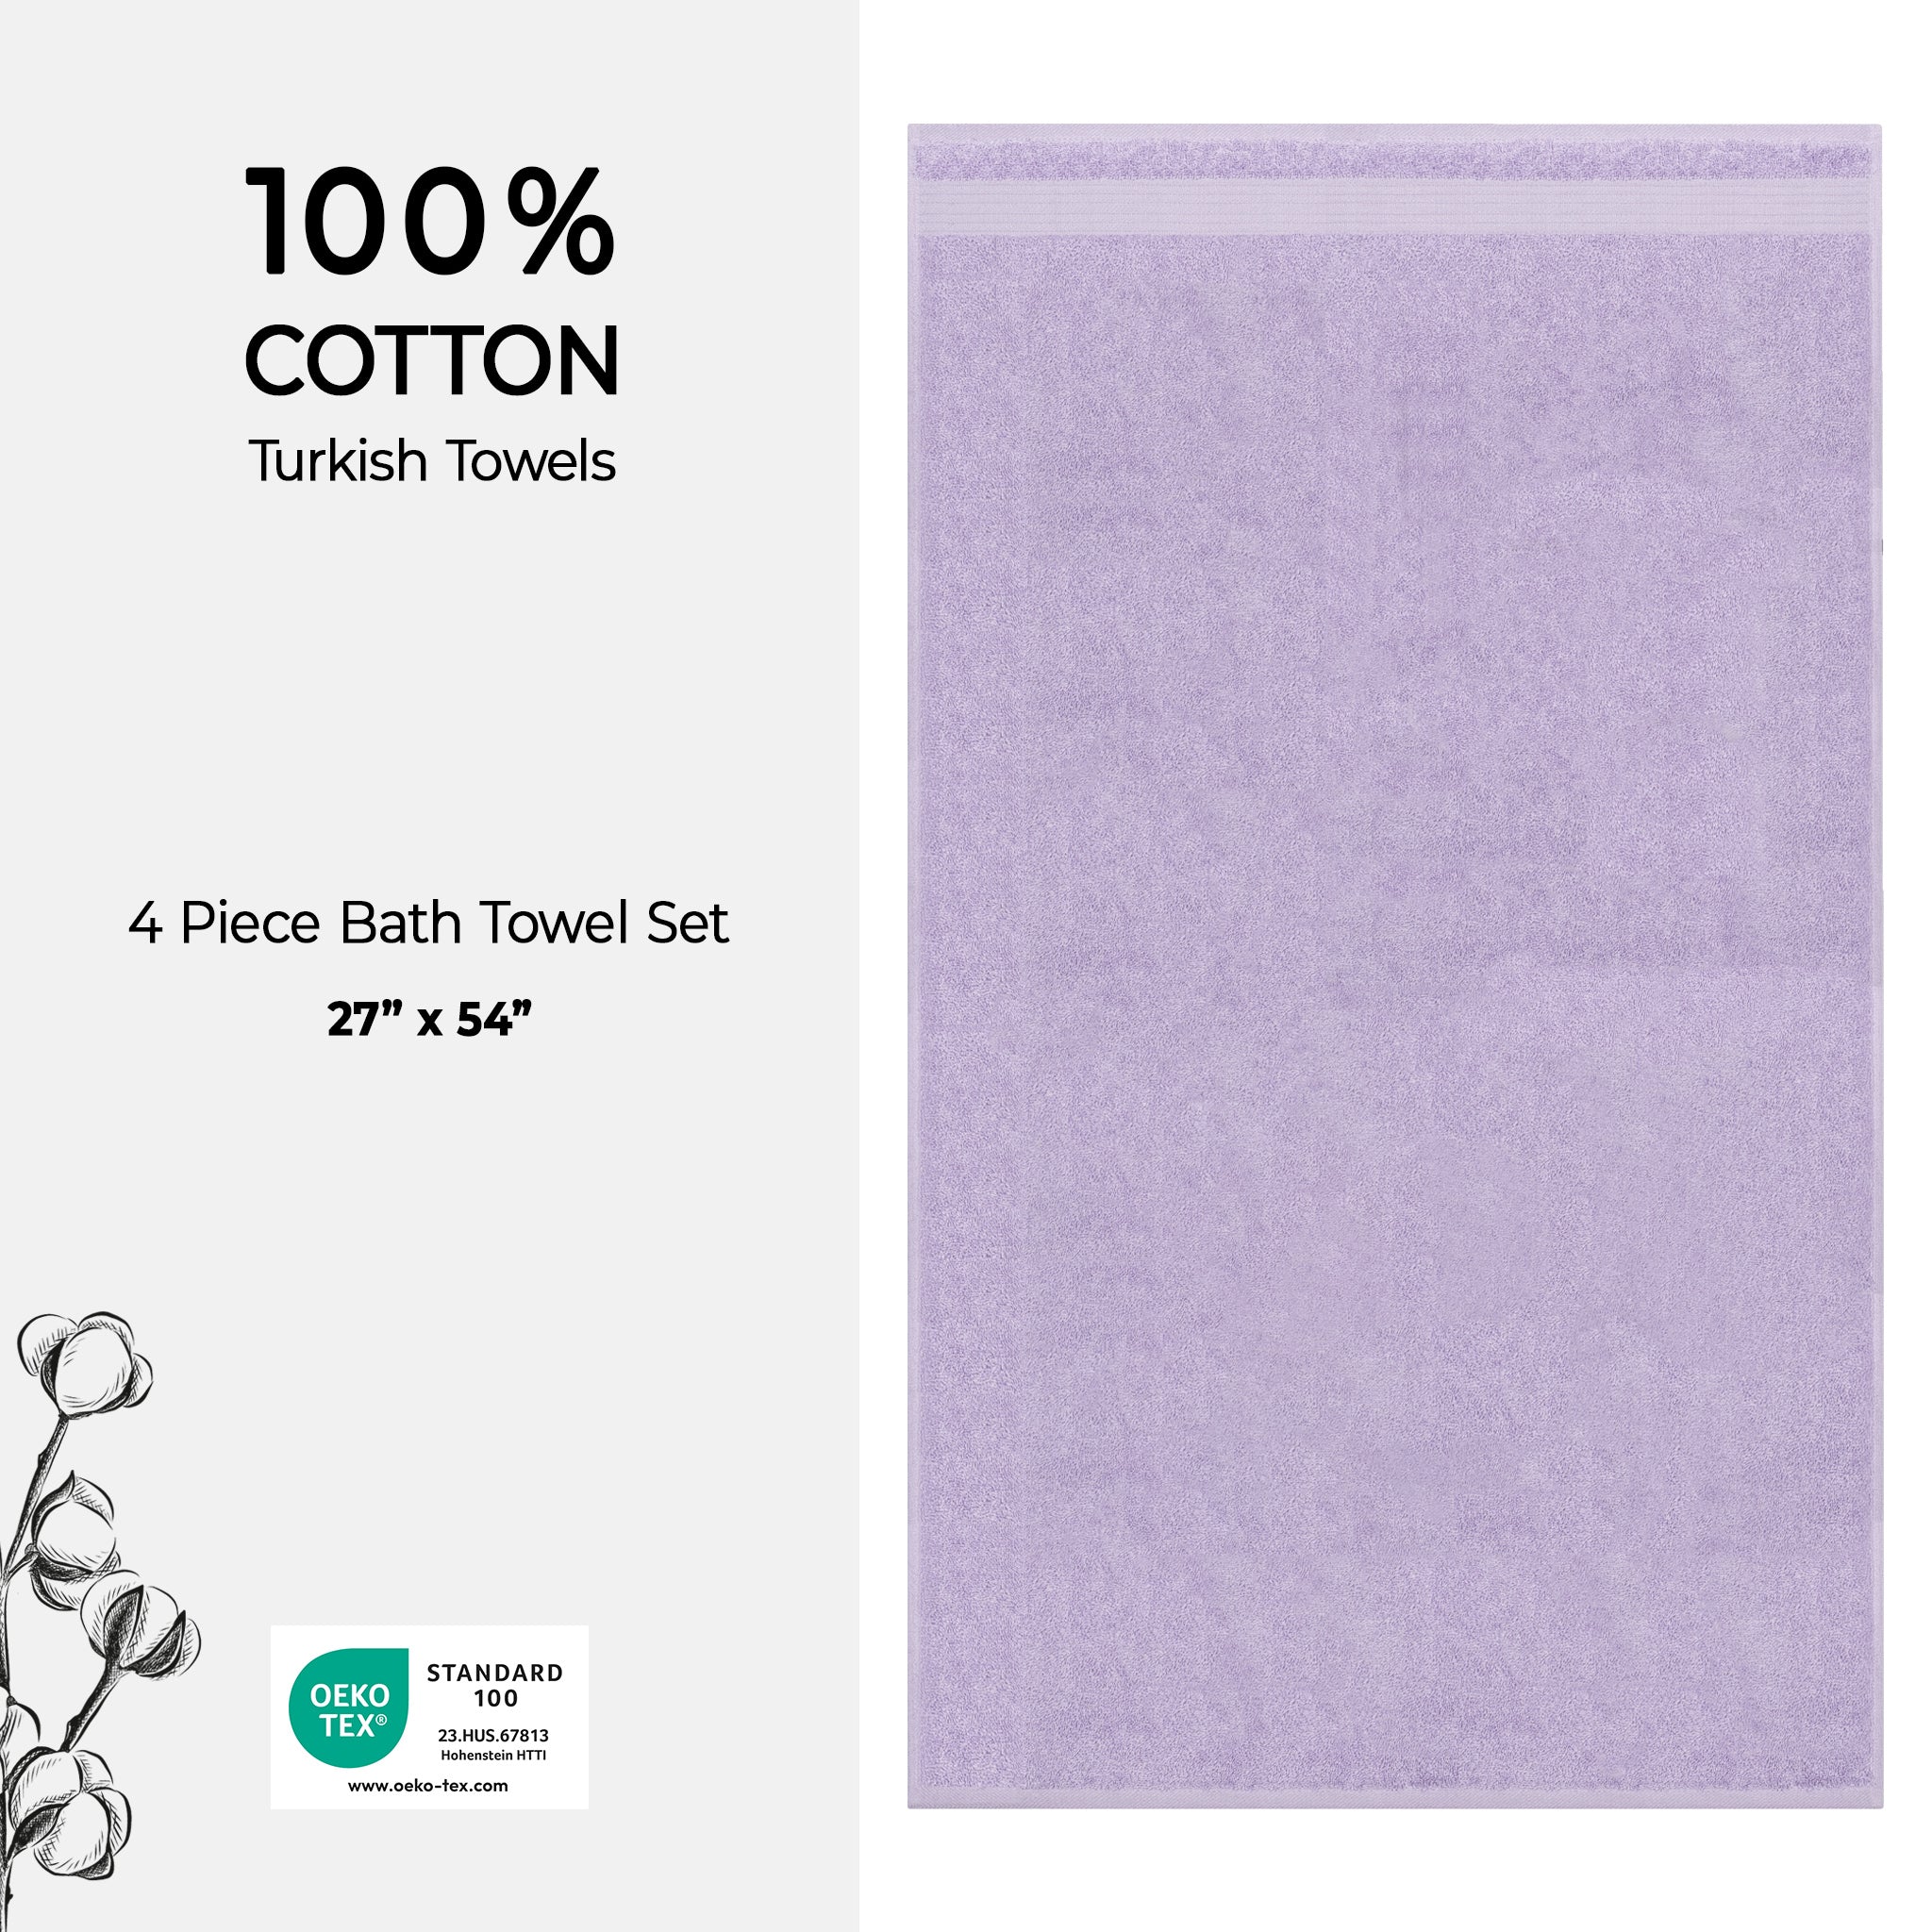 American Soft Linen Bekos 100% Cotton Turkish Towels, 4 Piece Bath Towel Set -lilac-04